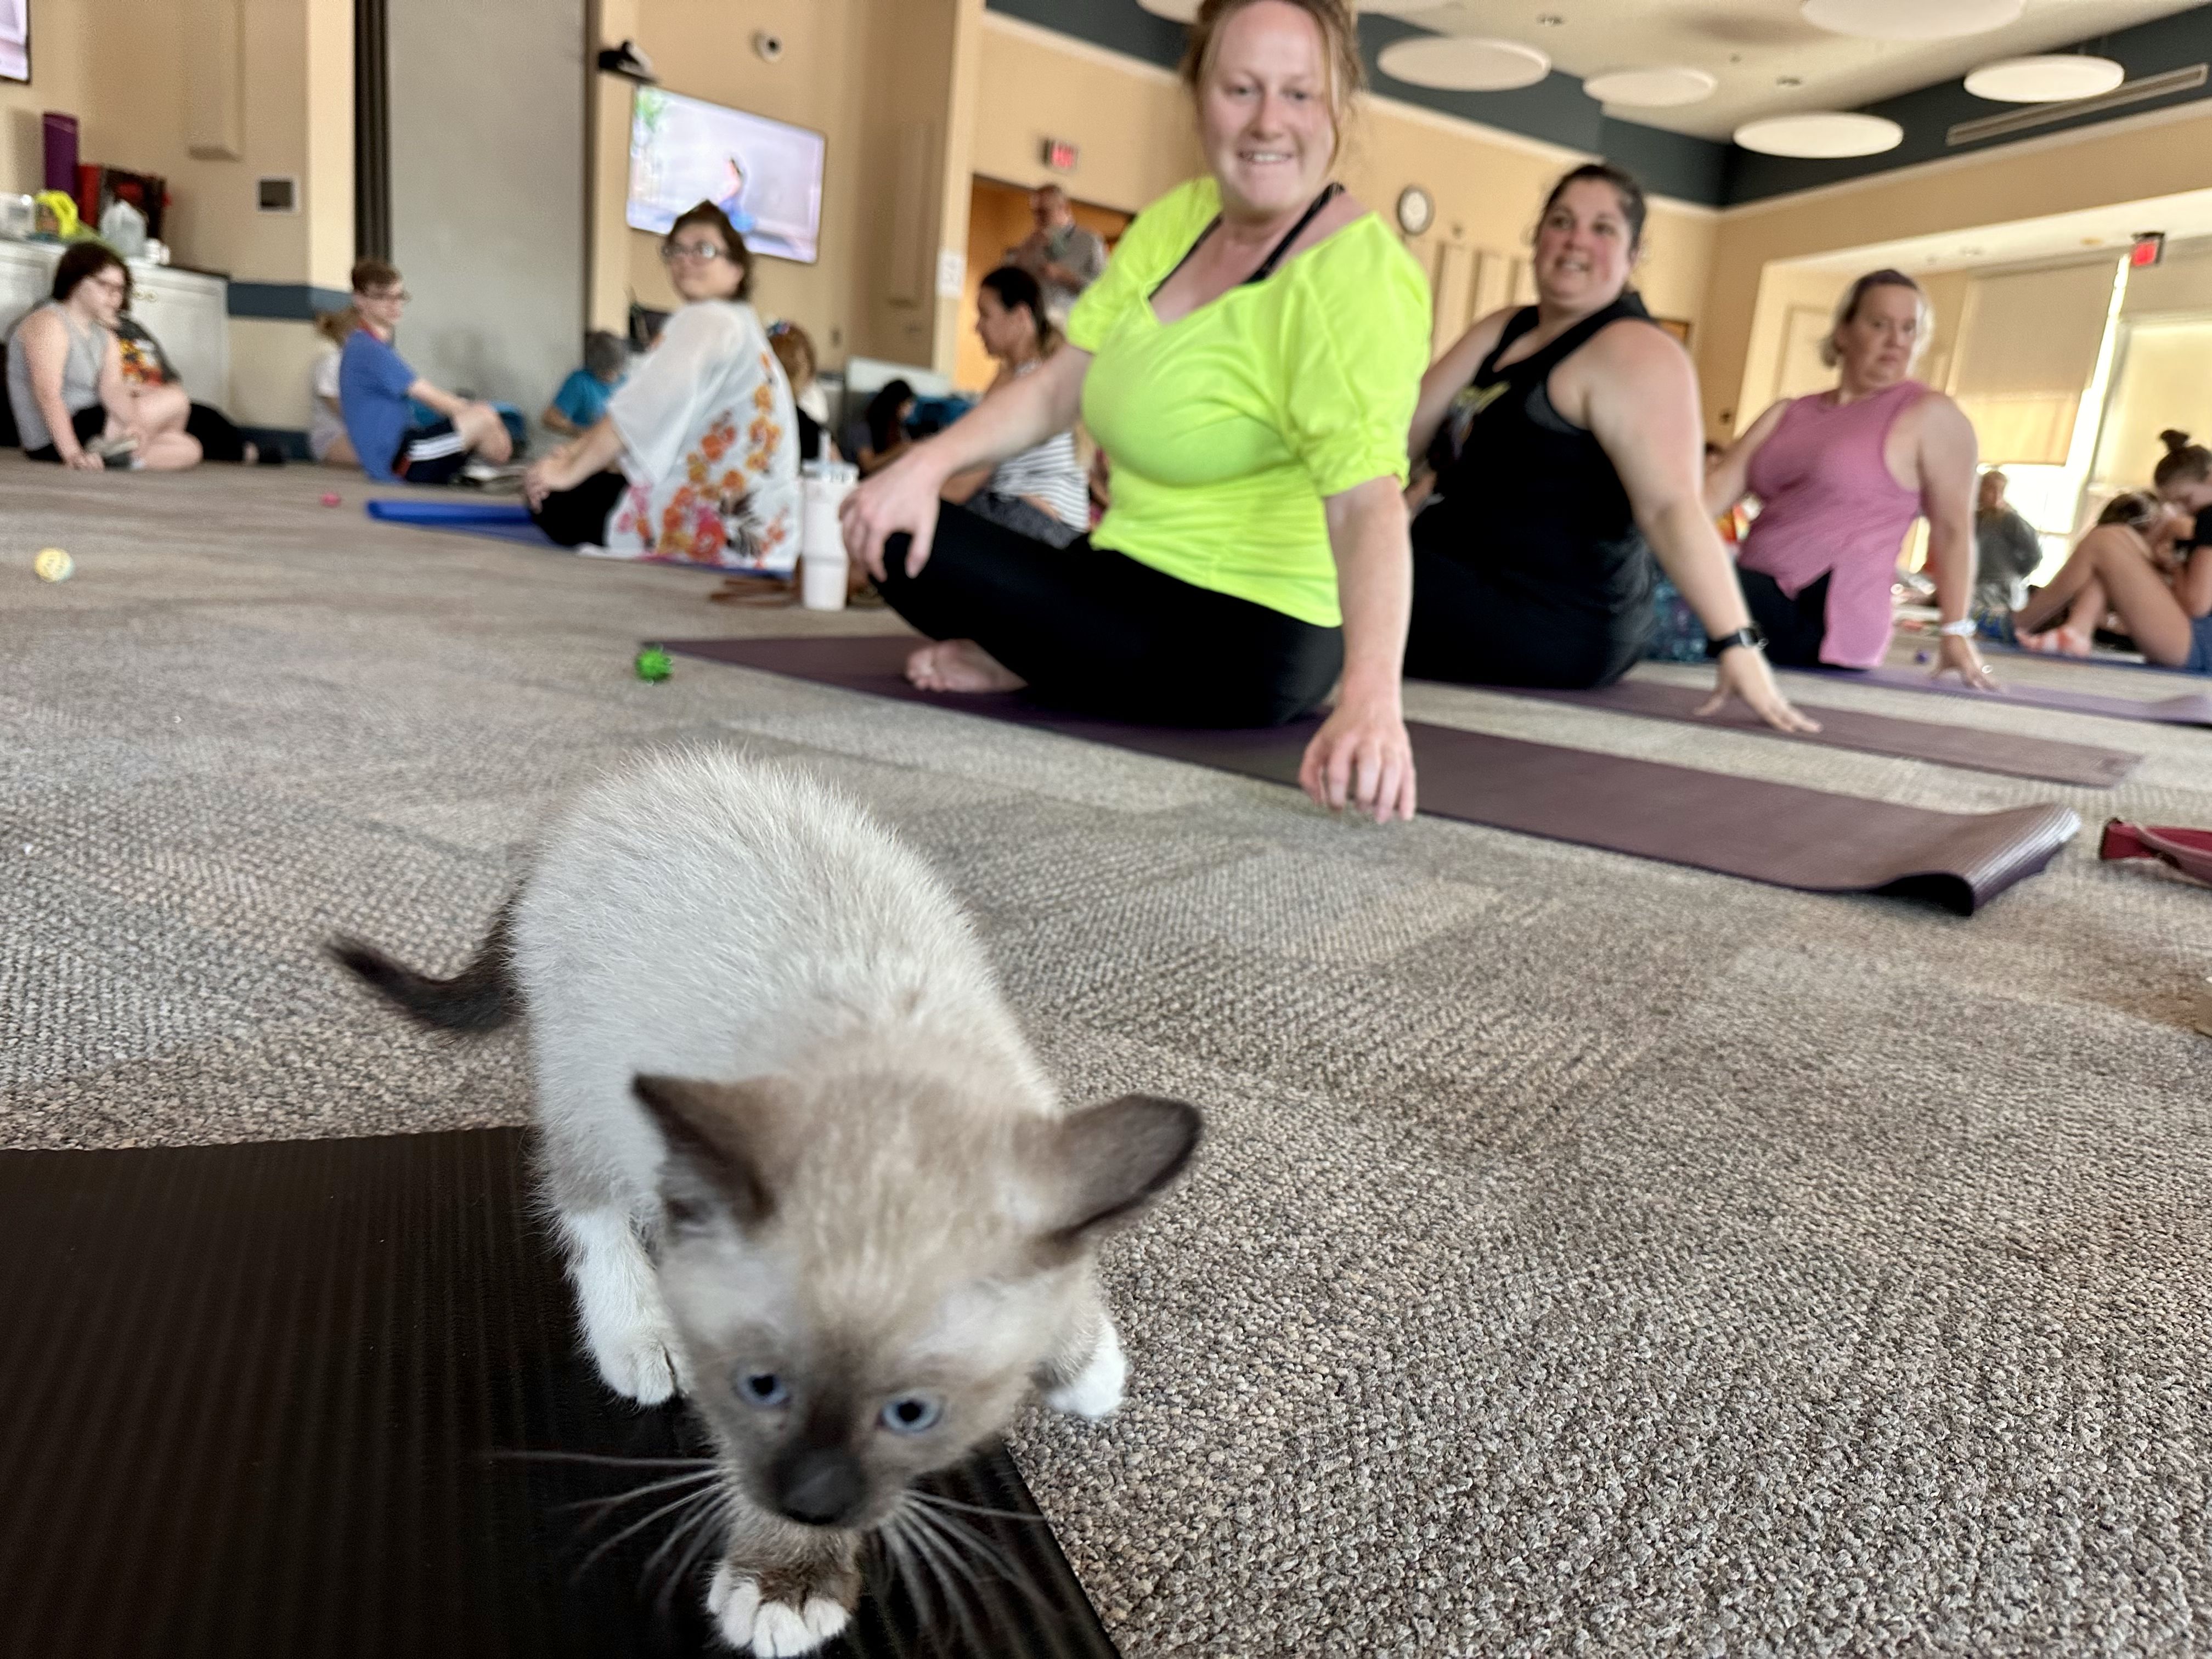 Photo shows a kitten on a yoga mat